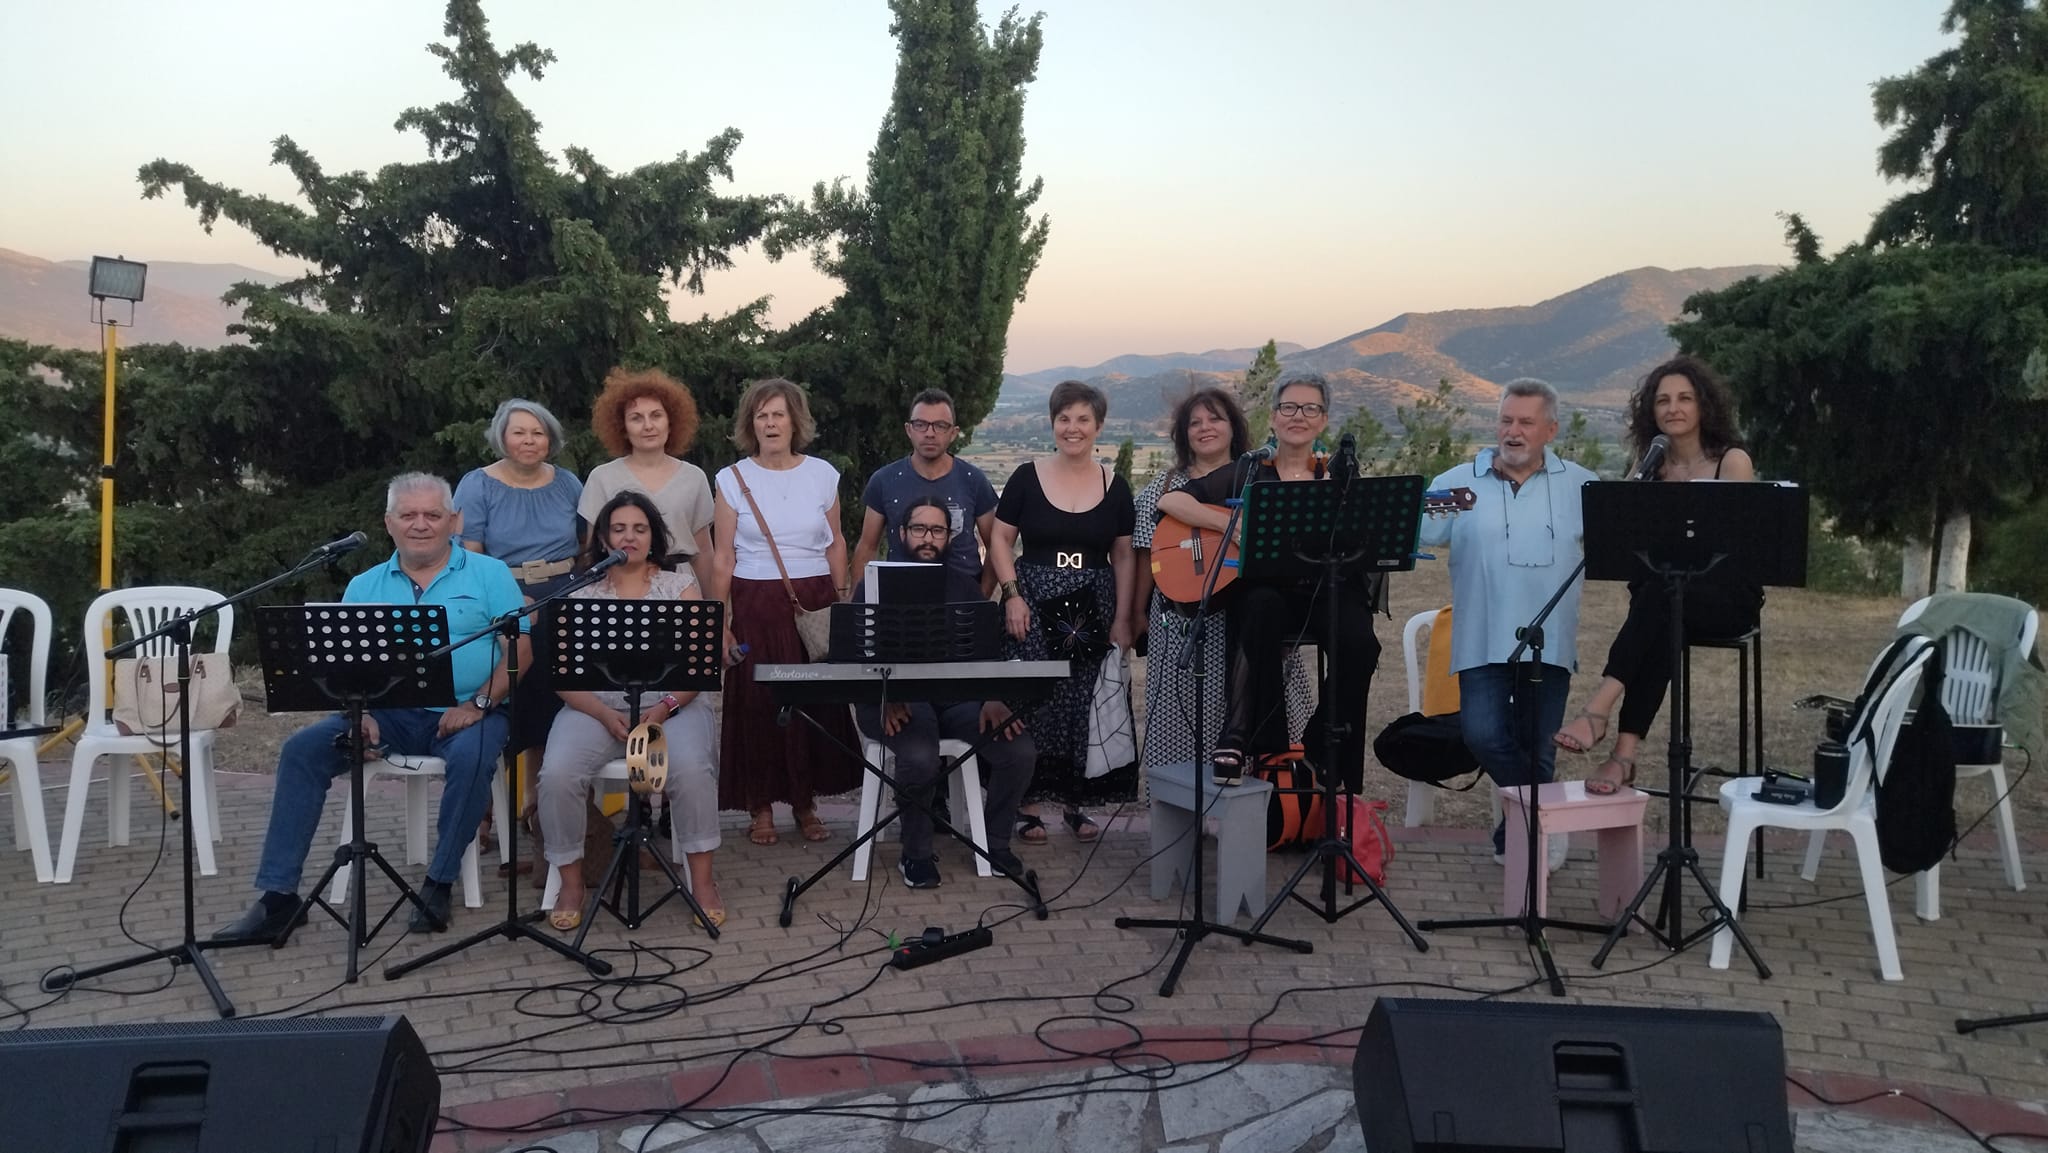 "Μια βραδιά στο λόφο… ": Μουσική εκδήλωση στους Γόννους